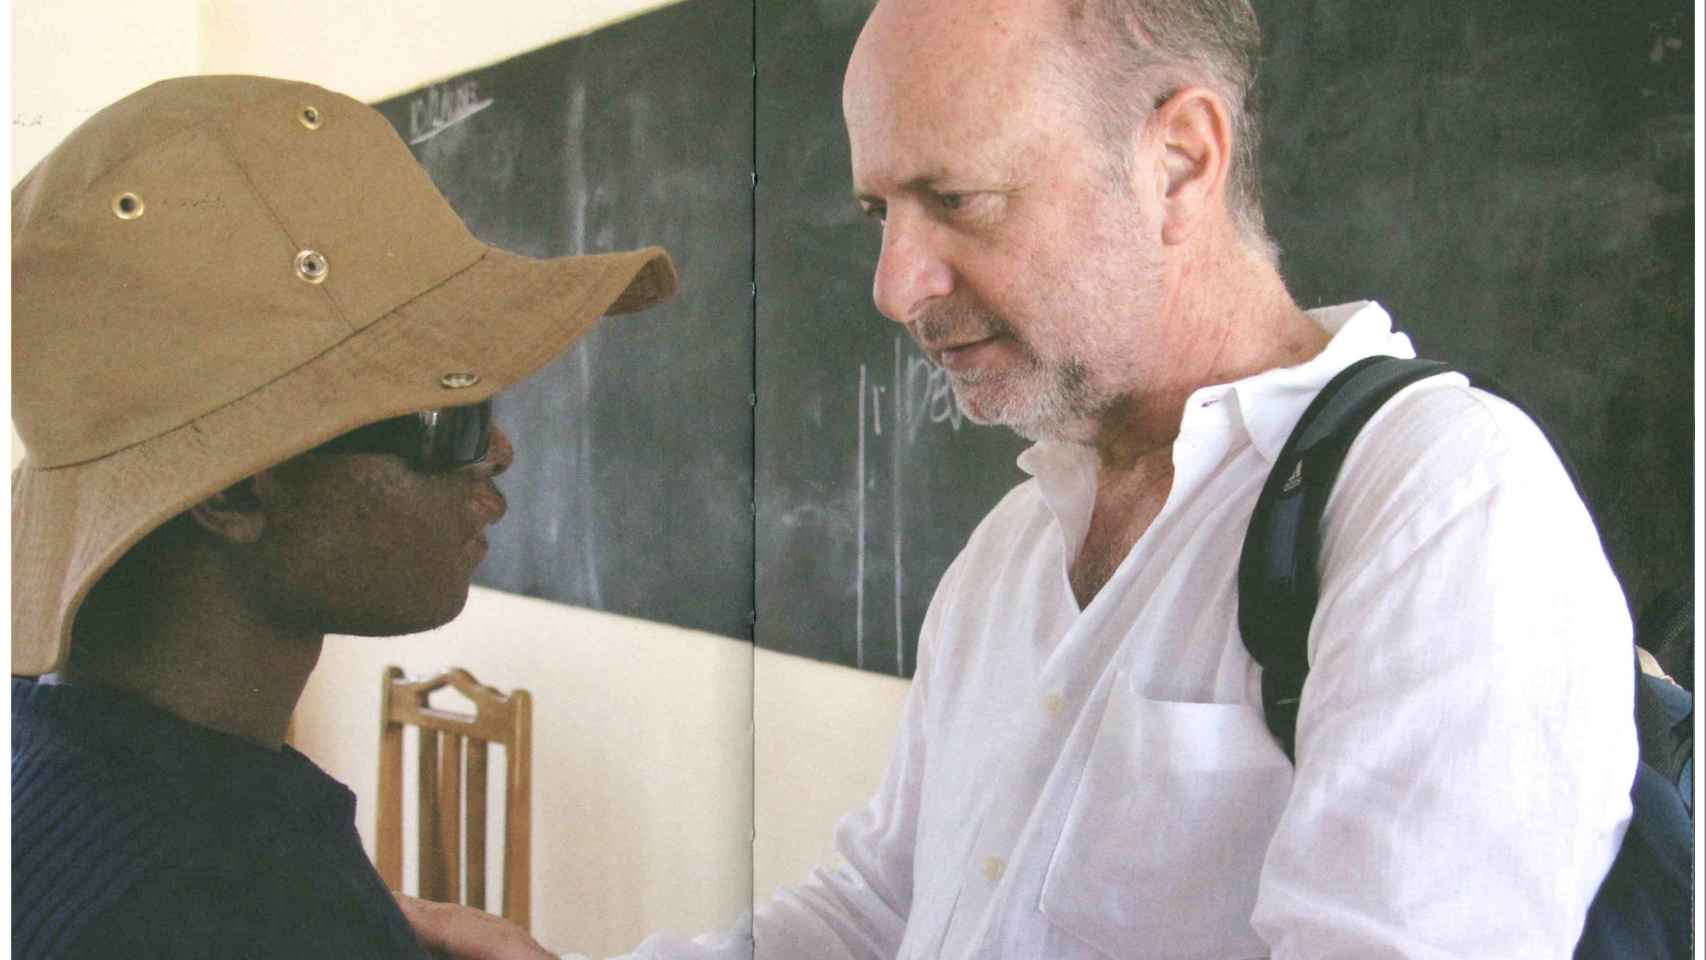 El doctor Pedro Jaén en Tanzania. Imagen extraída del libro 'Salvad al guisante blanco' de Miguel Almodóvar.